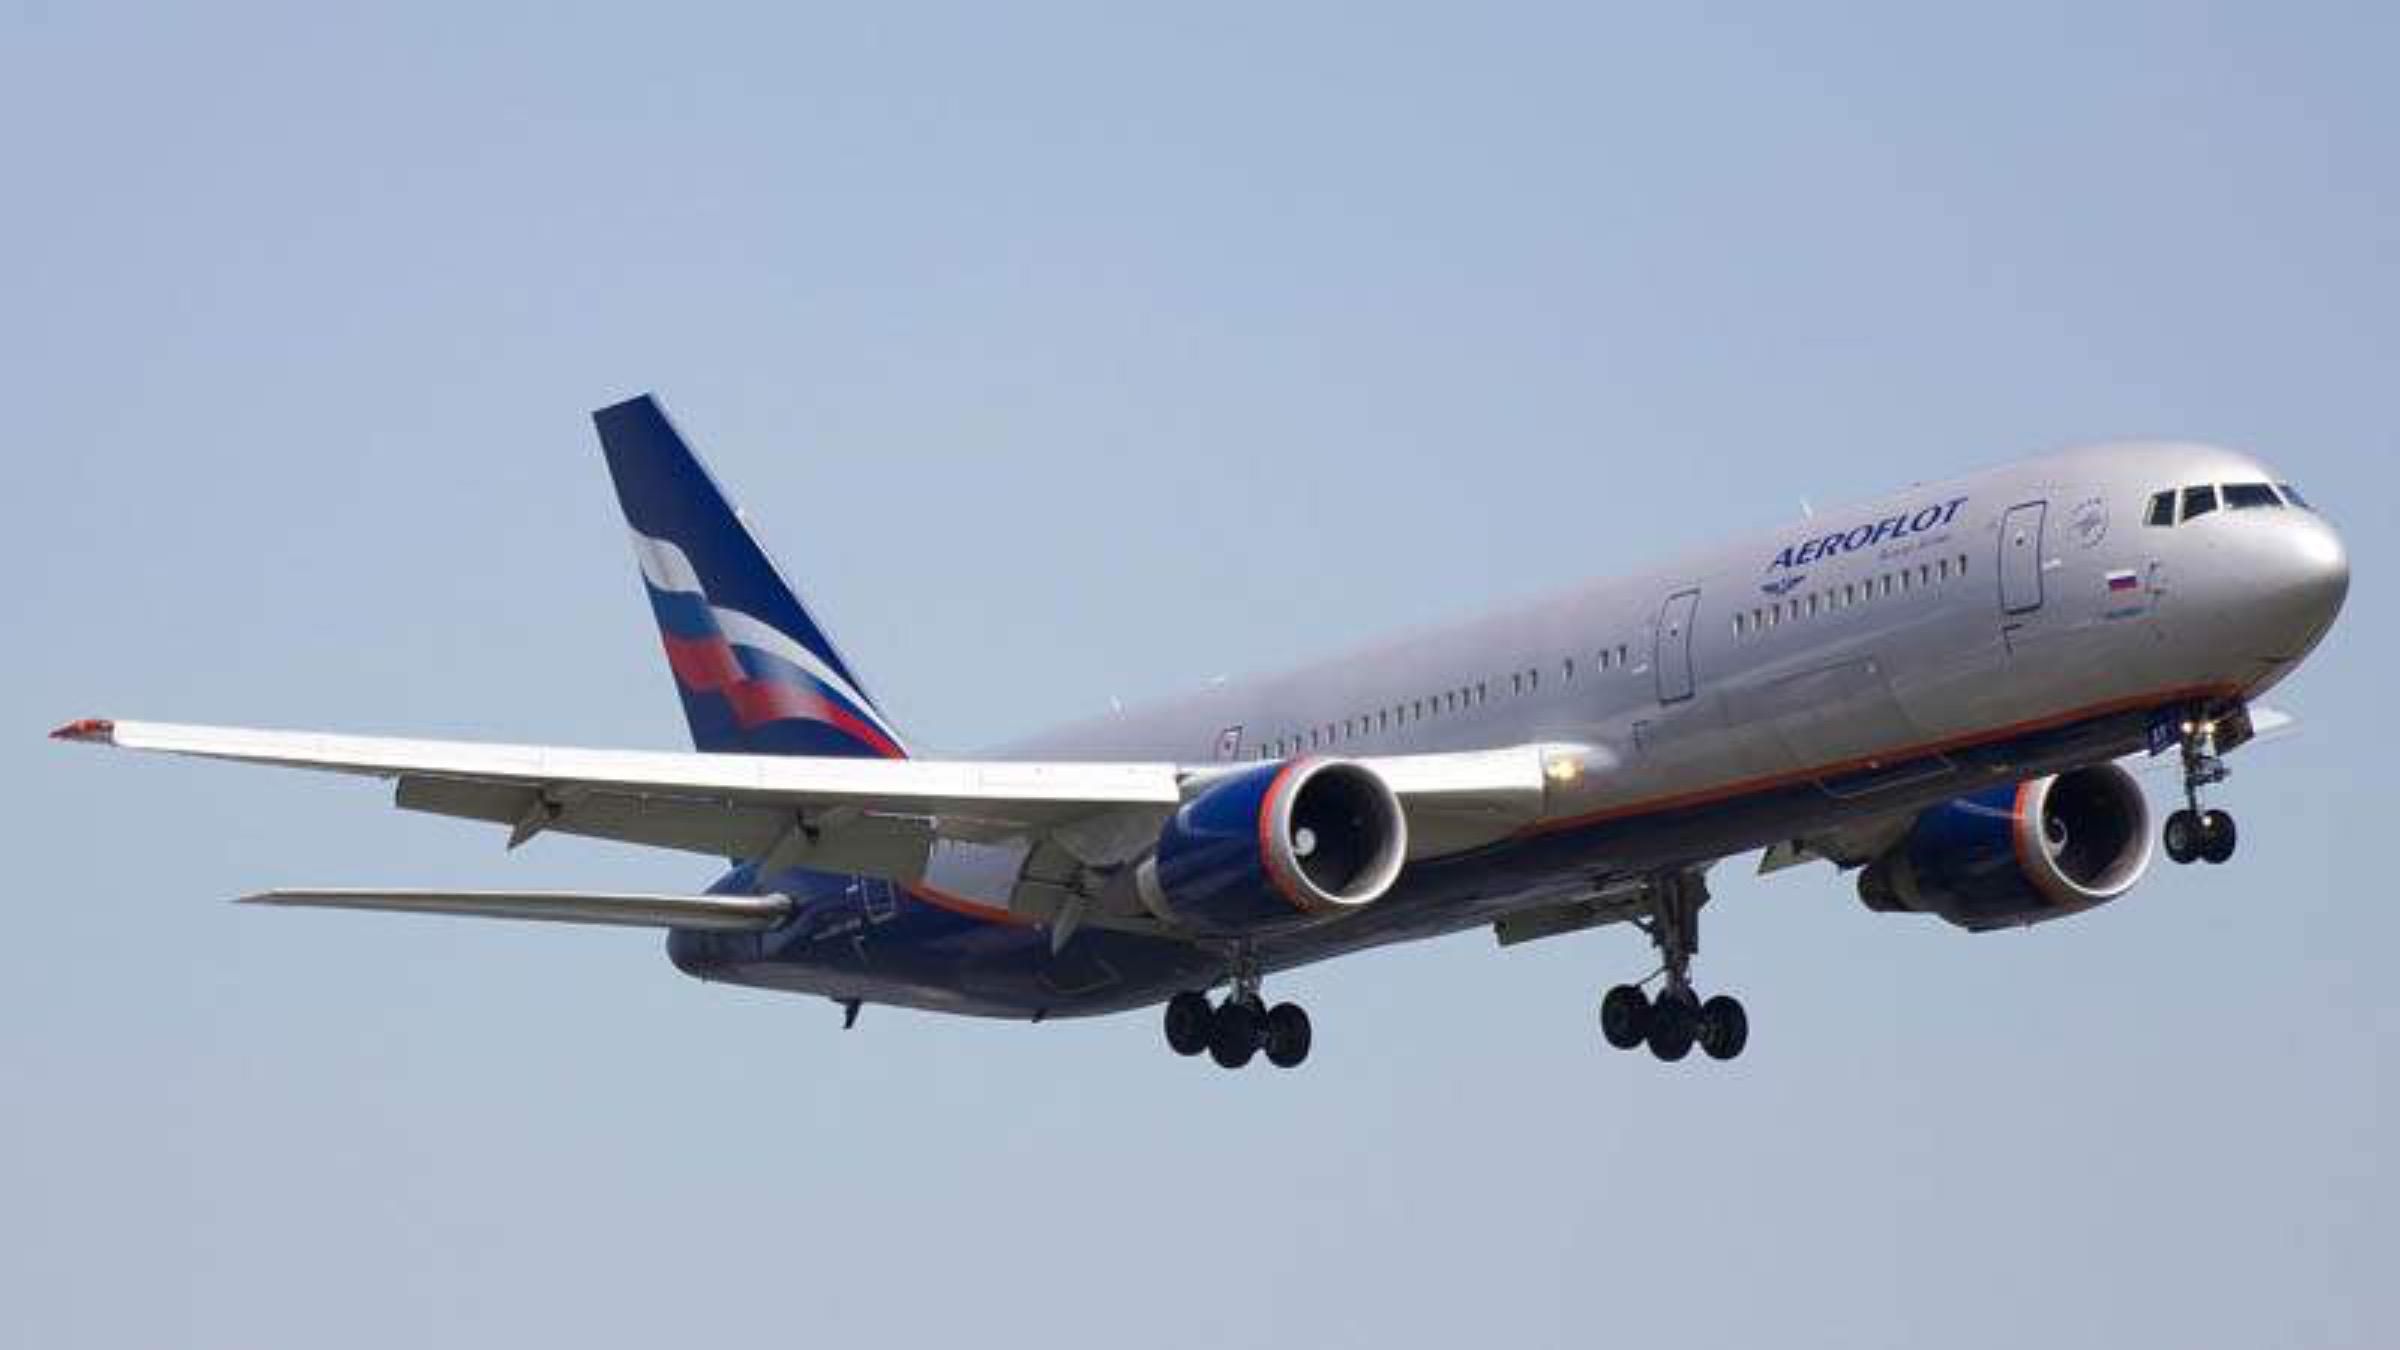 Министерство торговли США запретило 3 российским авиакомпаниям получать американские детали